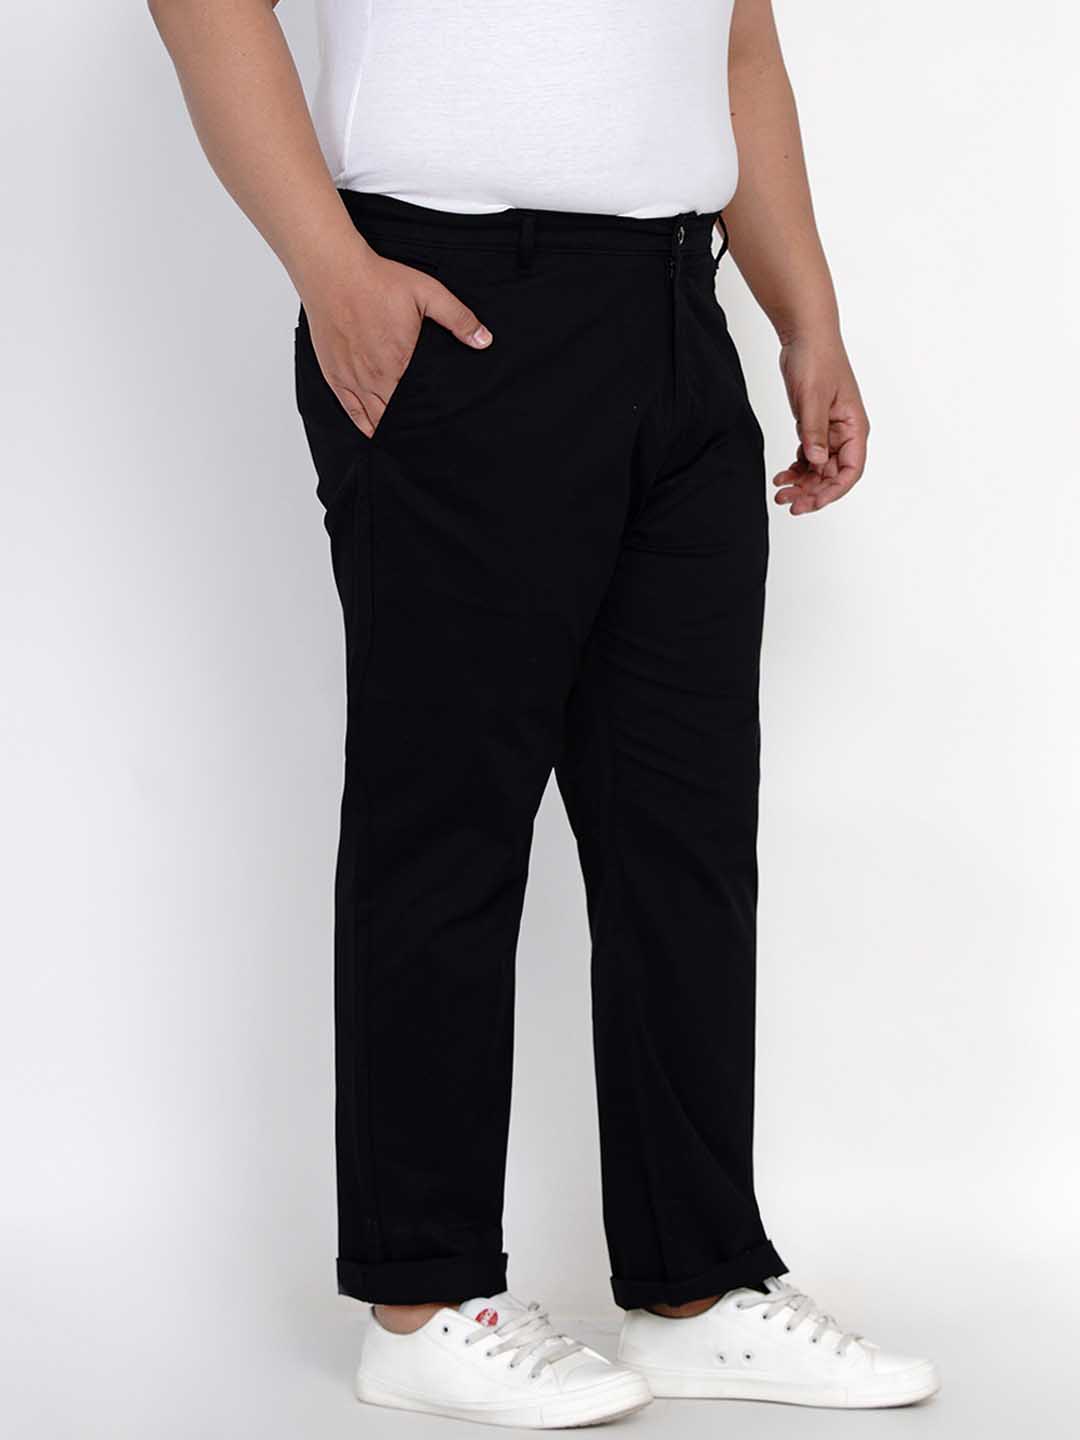 bottomwear/trousers/JPTR2195D/jptr2195d-5.jpg